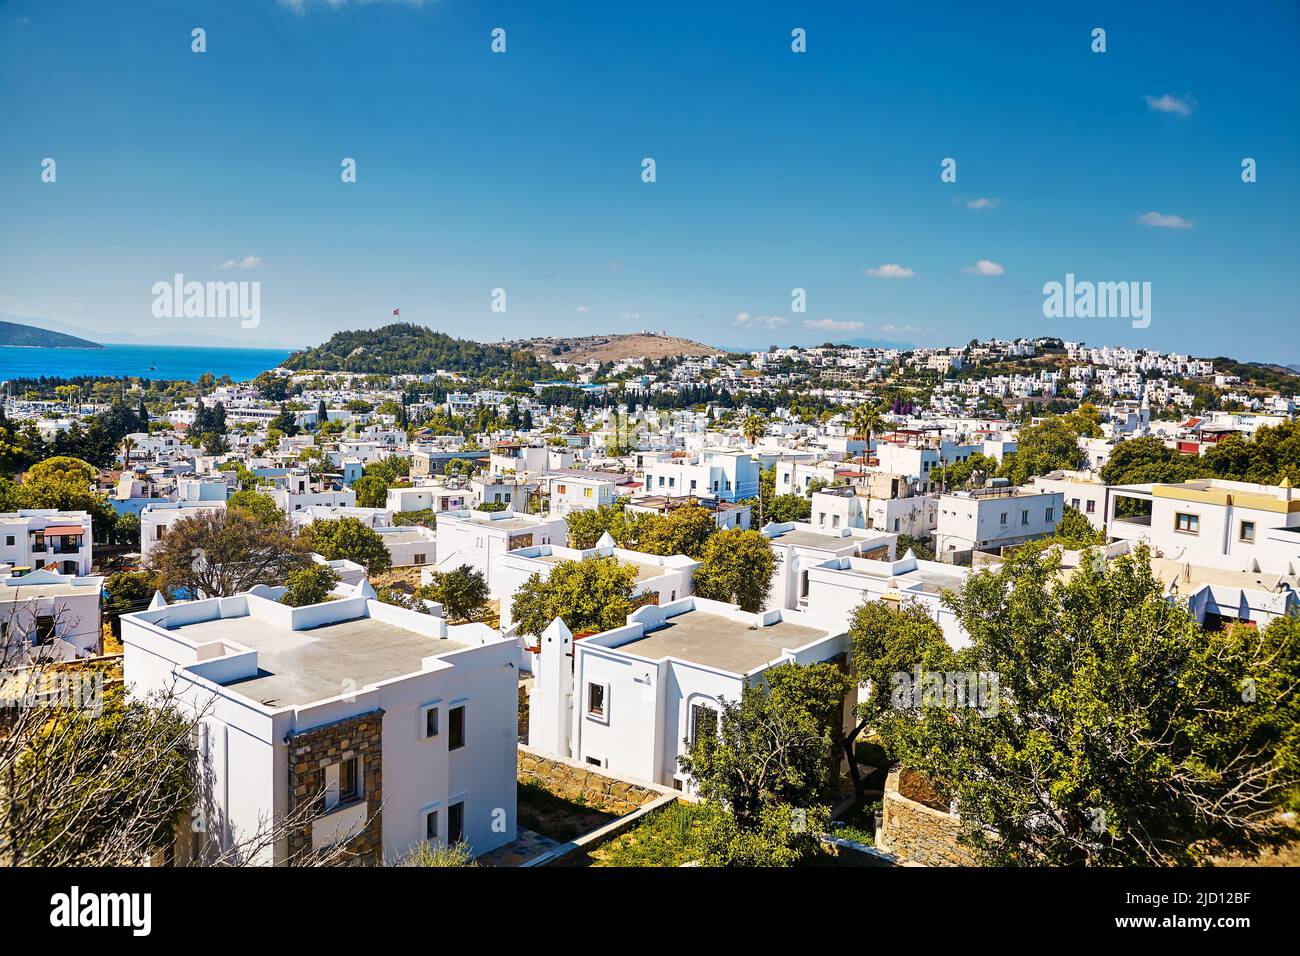 Bodrum città case bianche vicino spiaggia del mare Egeo in Turchia con confine dell'isola greca Foto Stock